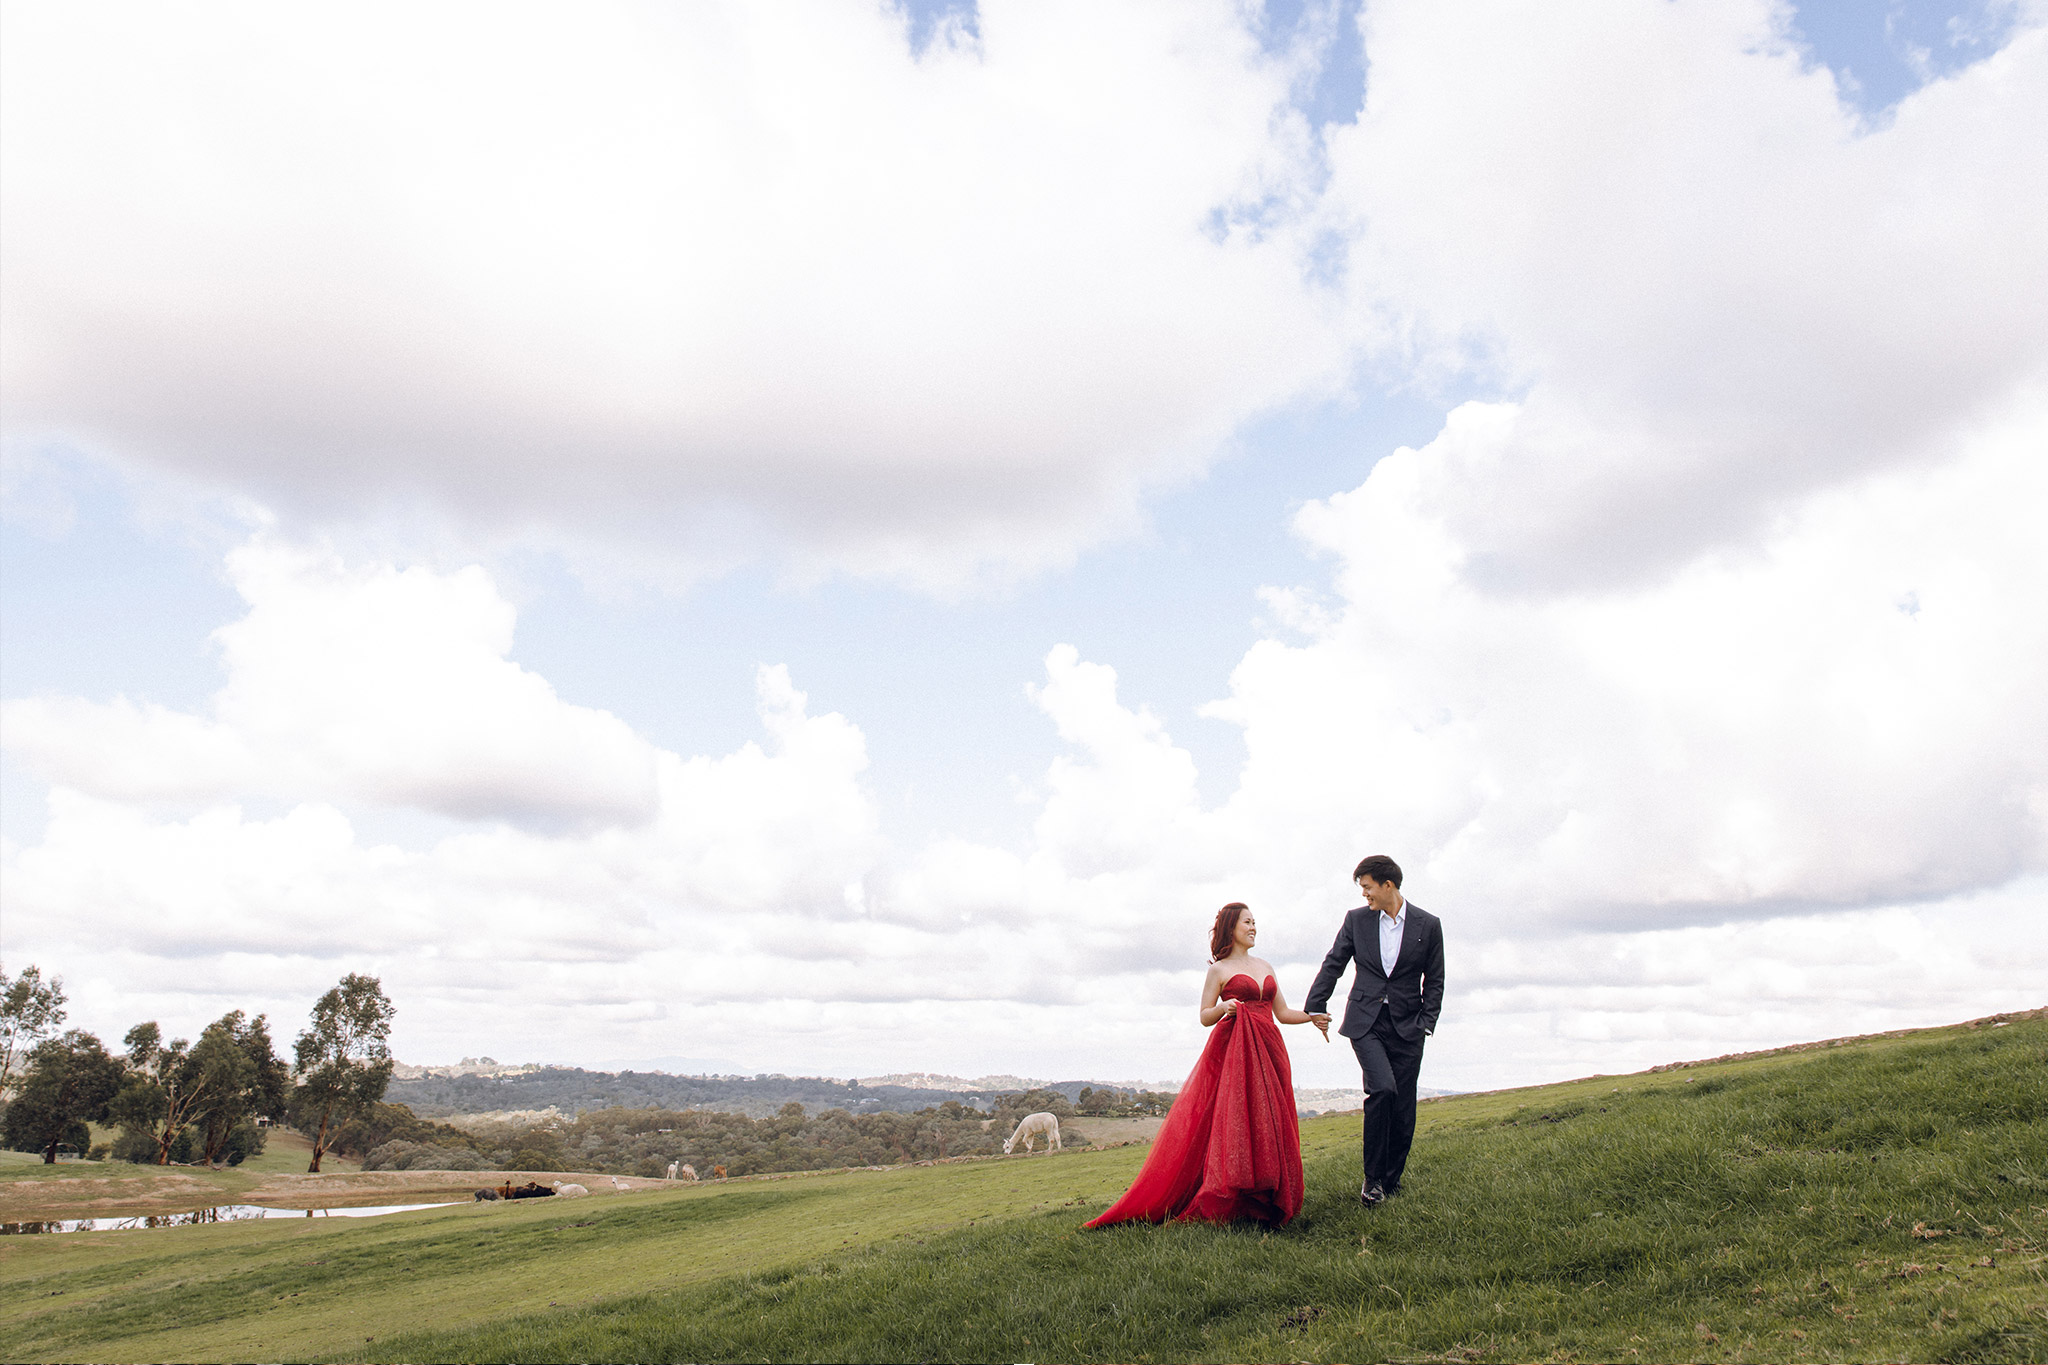 Melbourne Pre-Wedding Photoshoot at Alpaca Farm, Fitzroy Gardens & Brighton Beach by Freddie on OneThreeOneFour 0